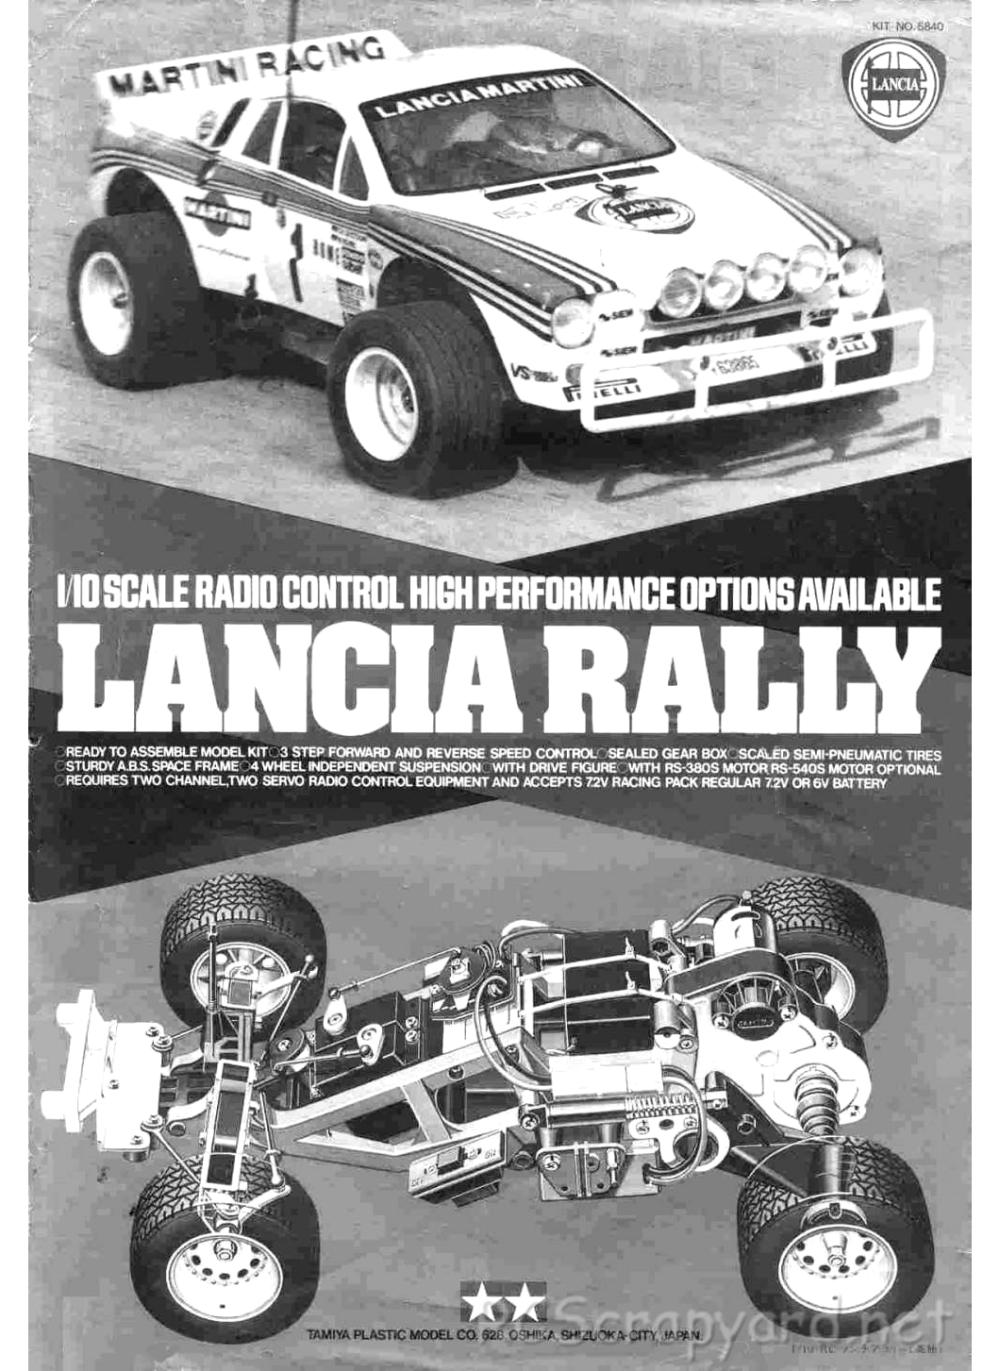 Tamiya - Lancia Rally - 58040 - Manual